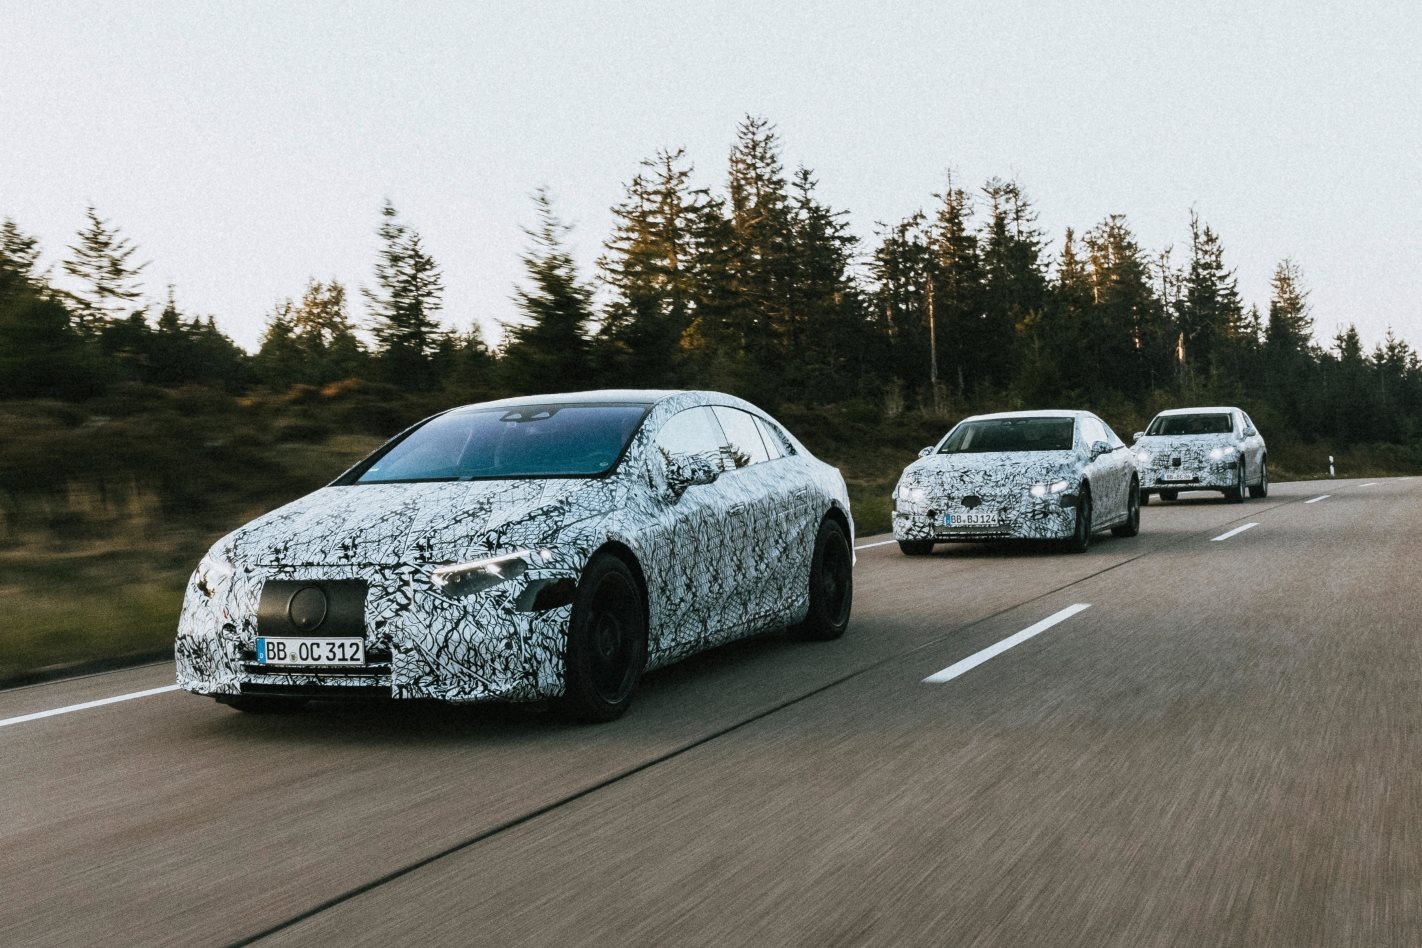 Mercedes EQ prototypes